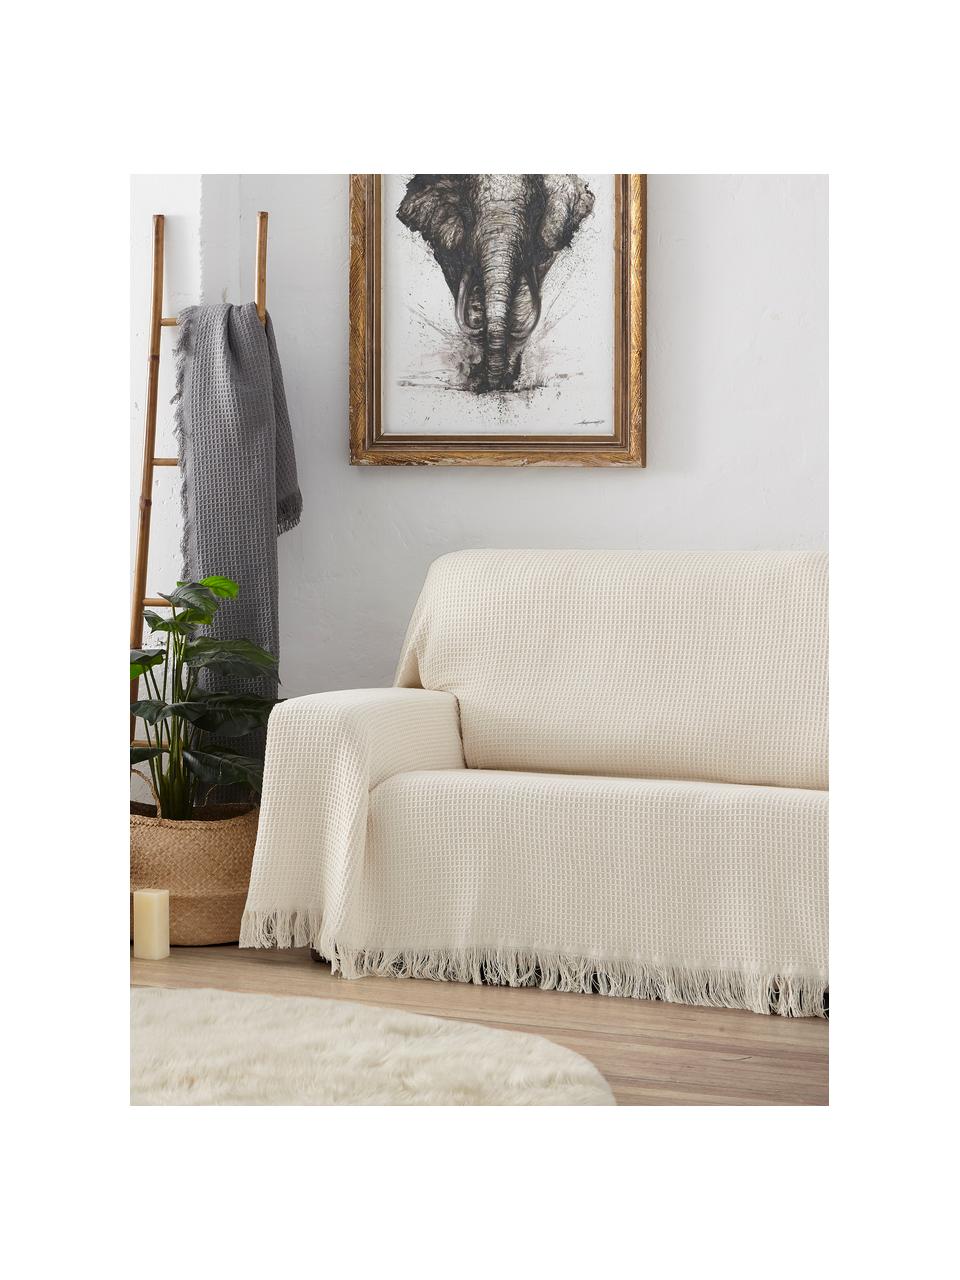 Wielofunkcyjna narzuta na sofę Amazons, 80% bawełna, 20% inne włókna, Odcienie kremowego, S 230 x D 260 cm